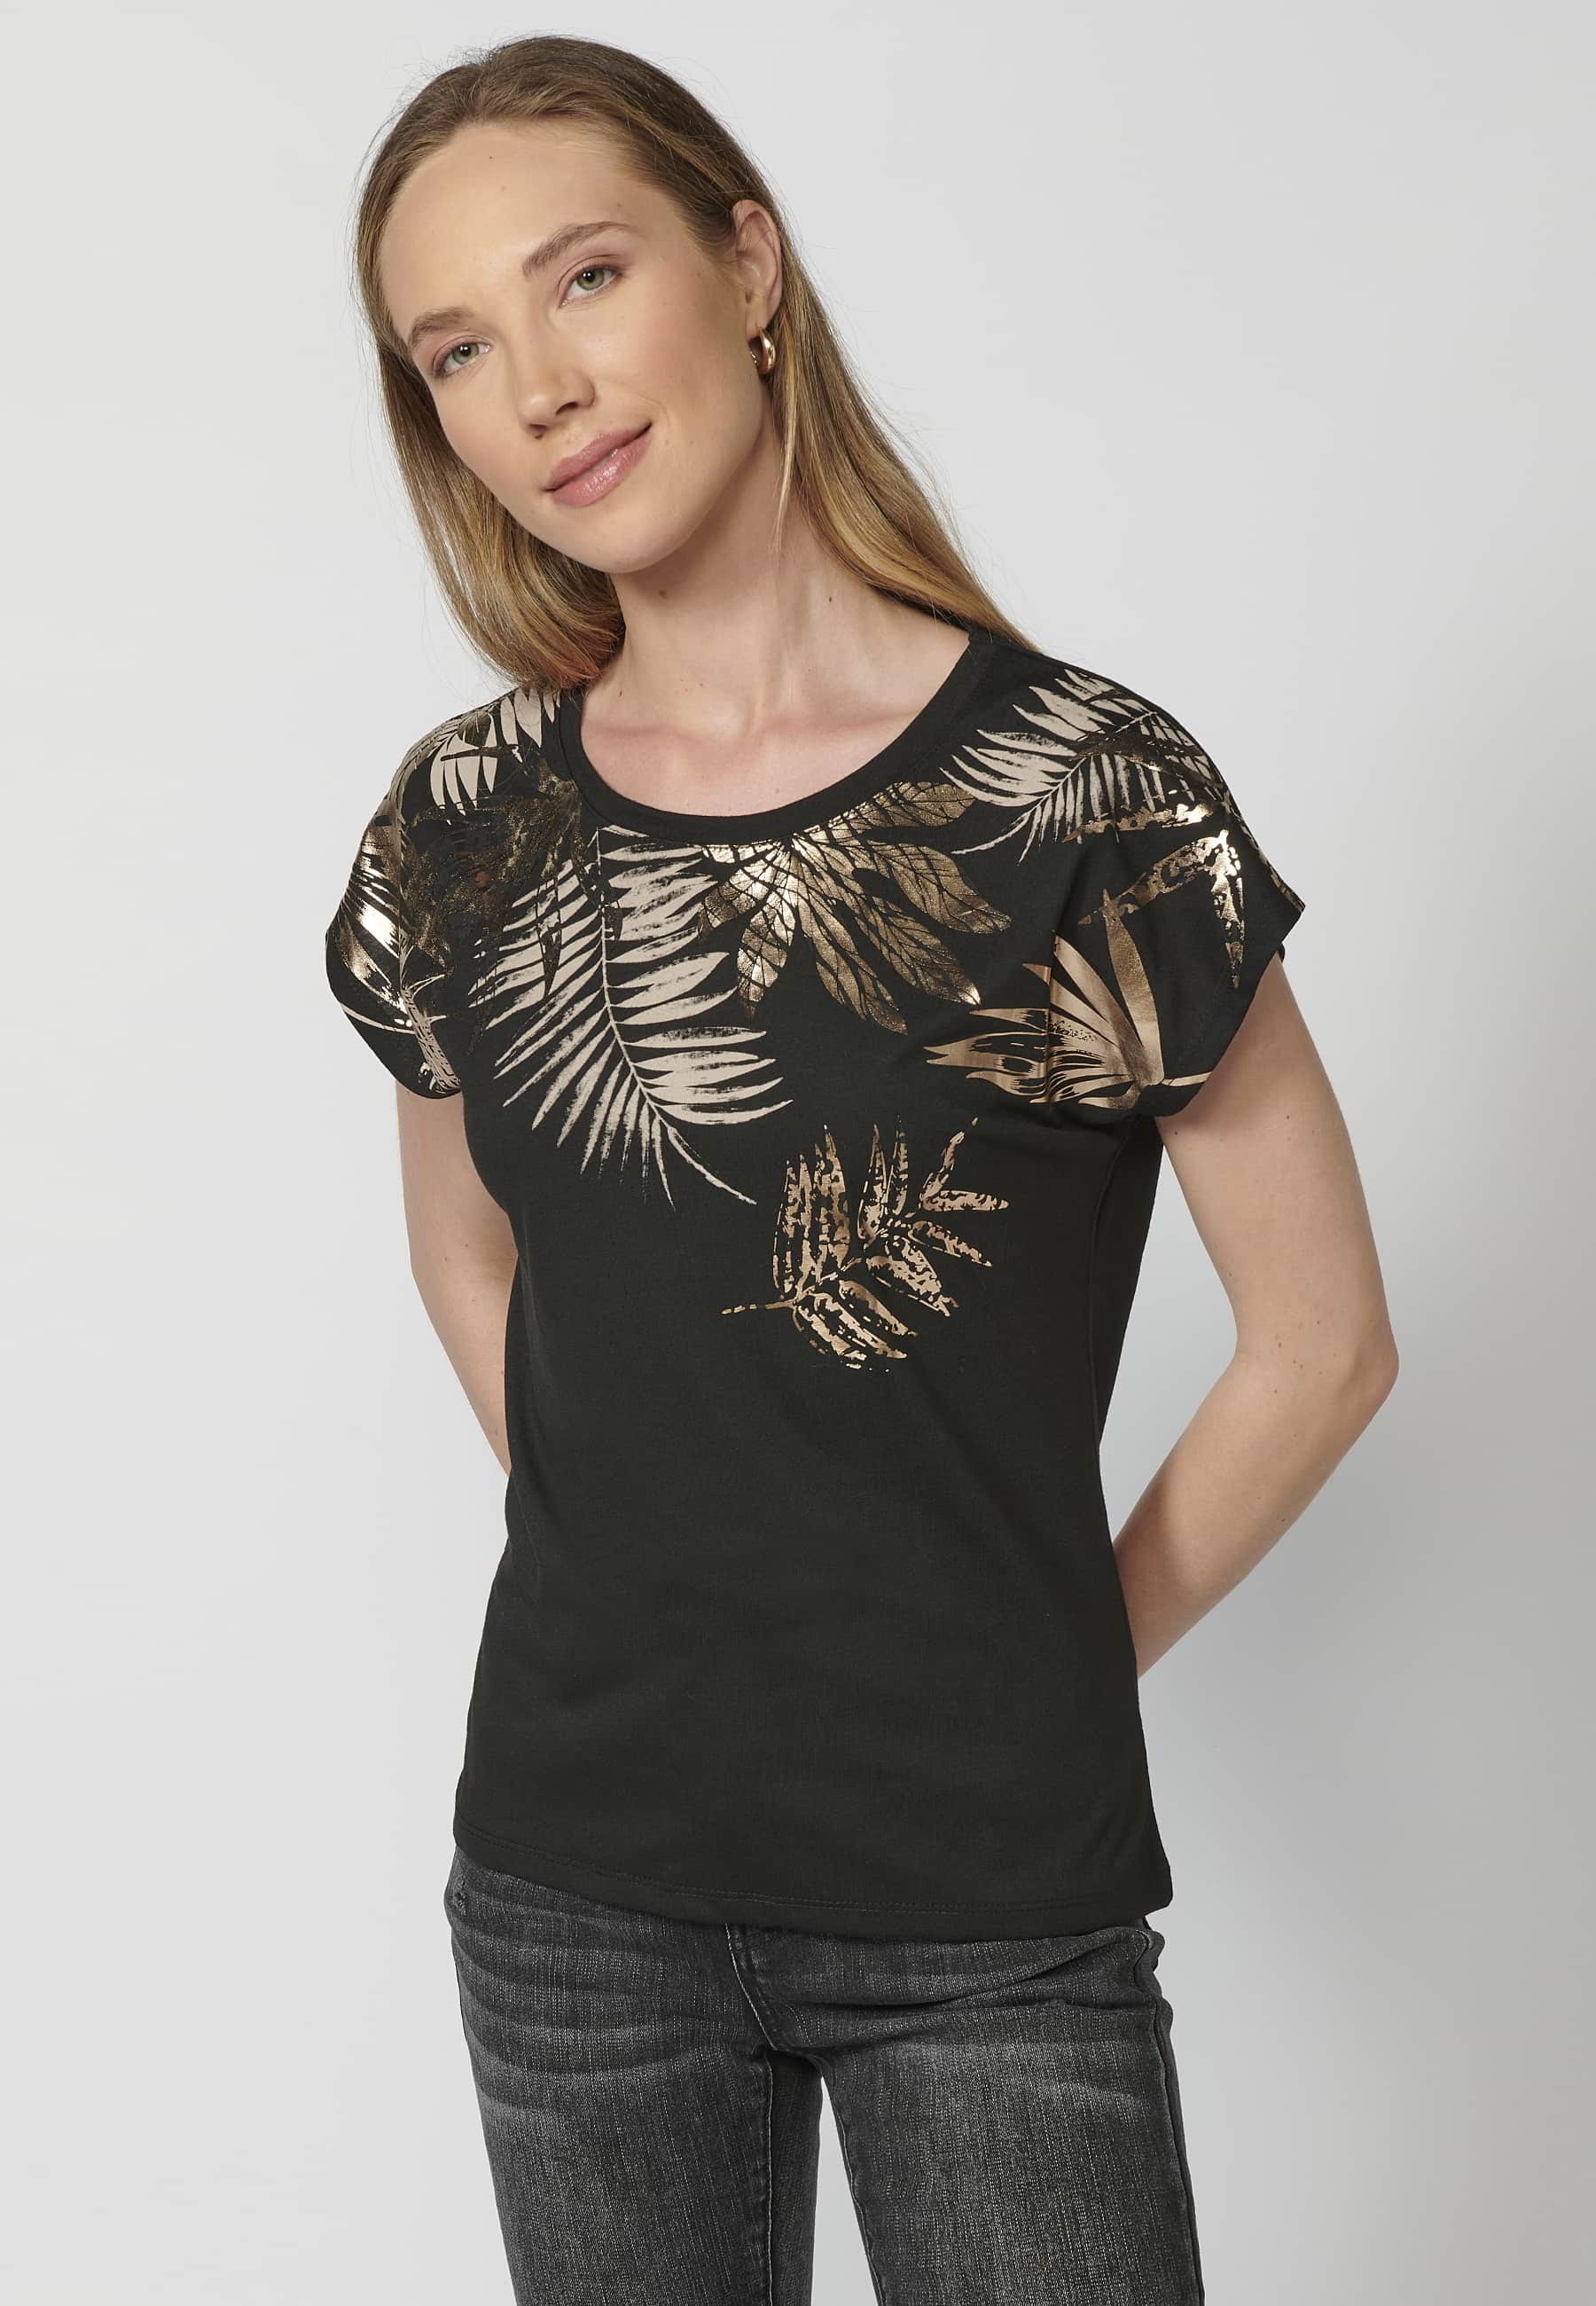 Camiseta de manga corta de algodón cuello redondo estampado frontal flores color negro para mujer